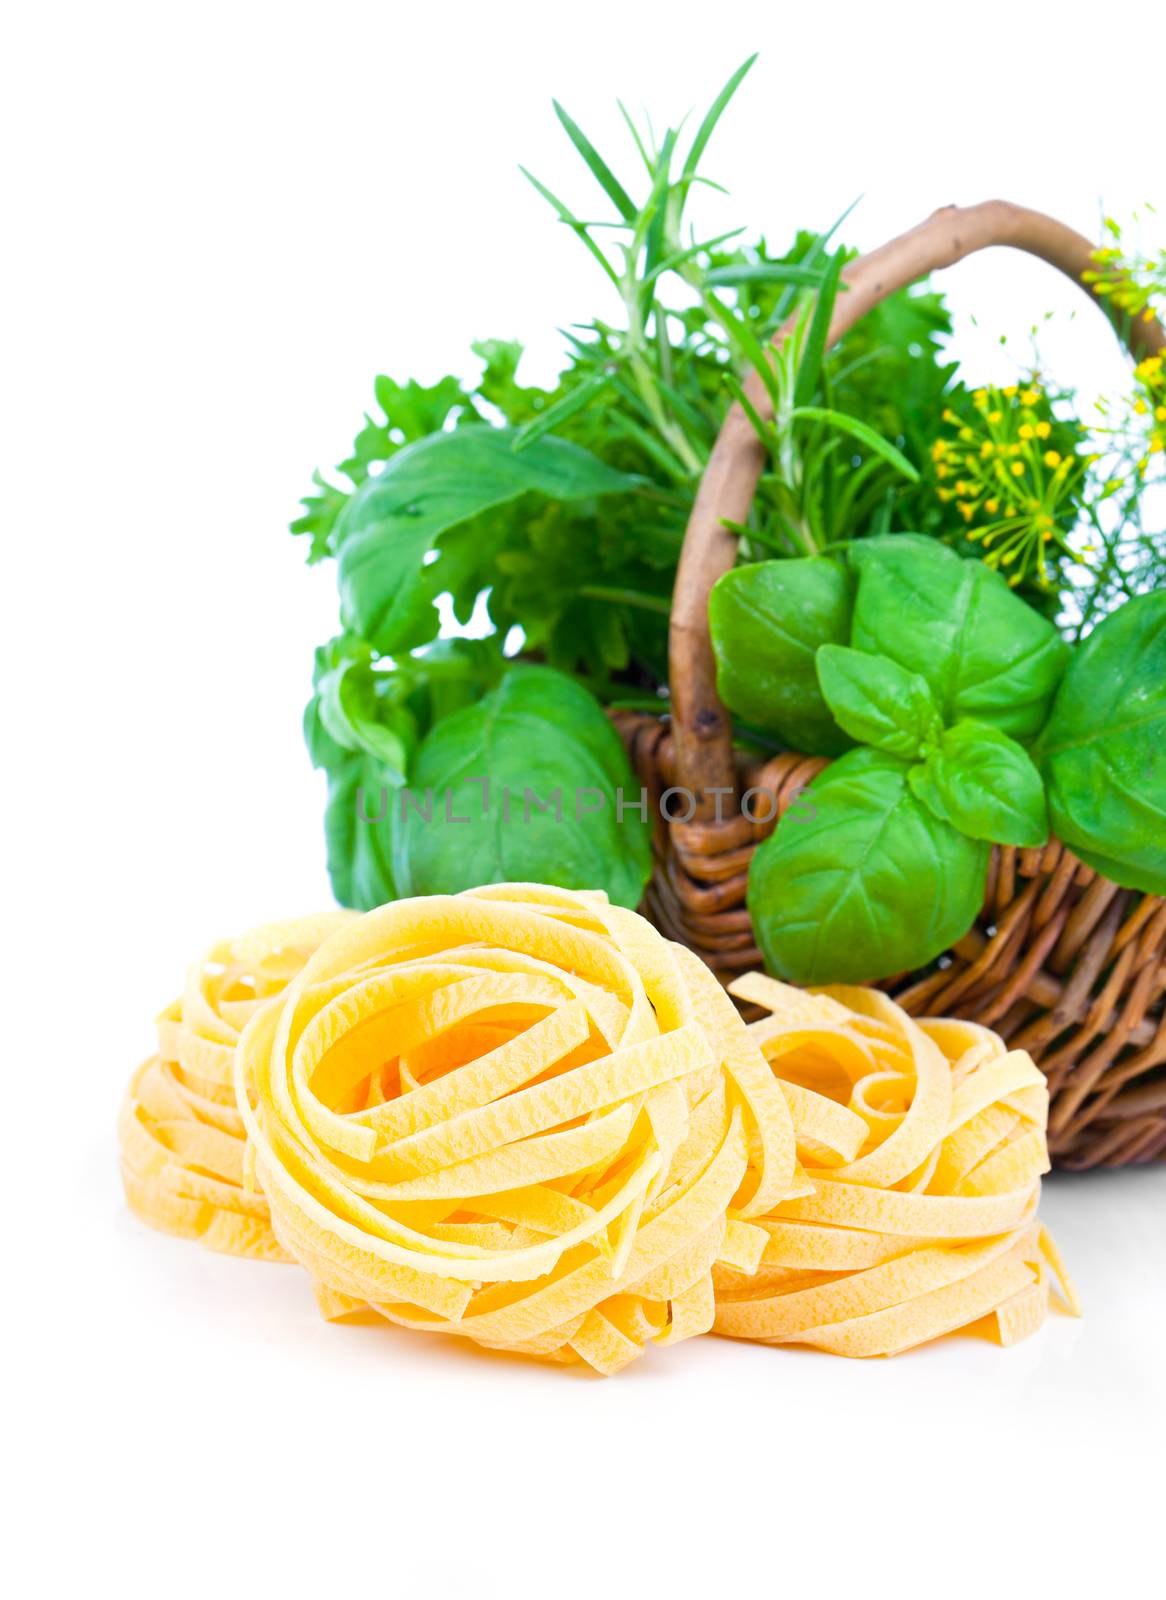 Italian pasta fettuccine nest with wicker basket green herbs, on by motorolka